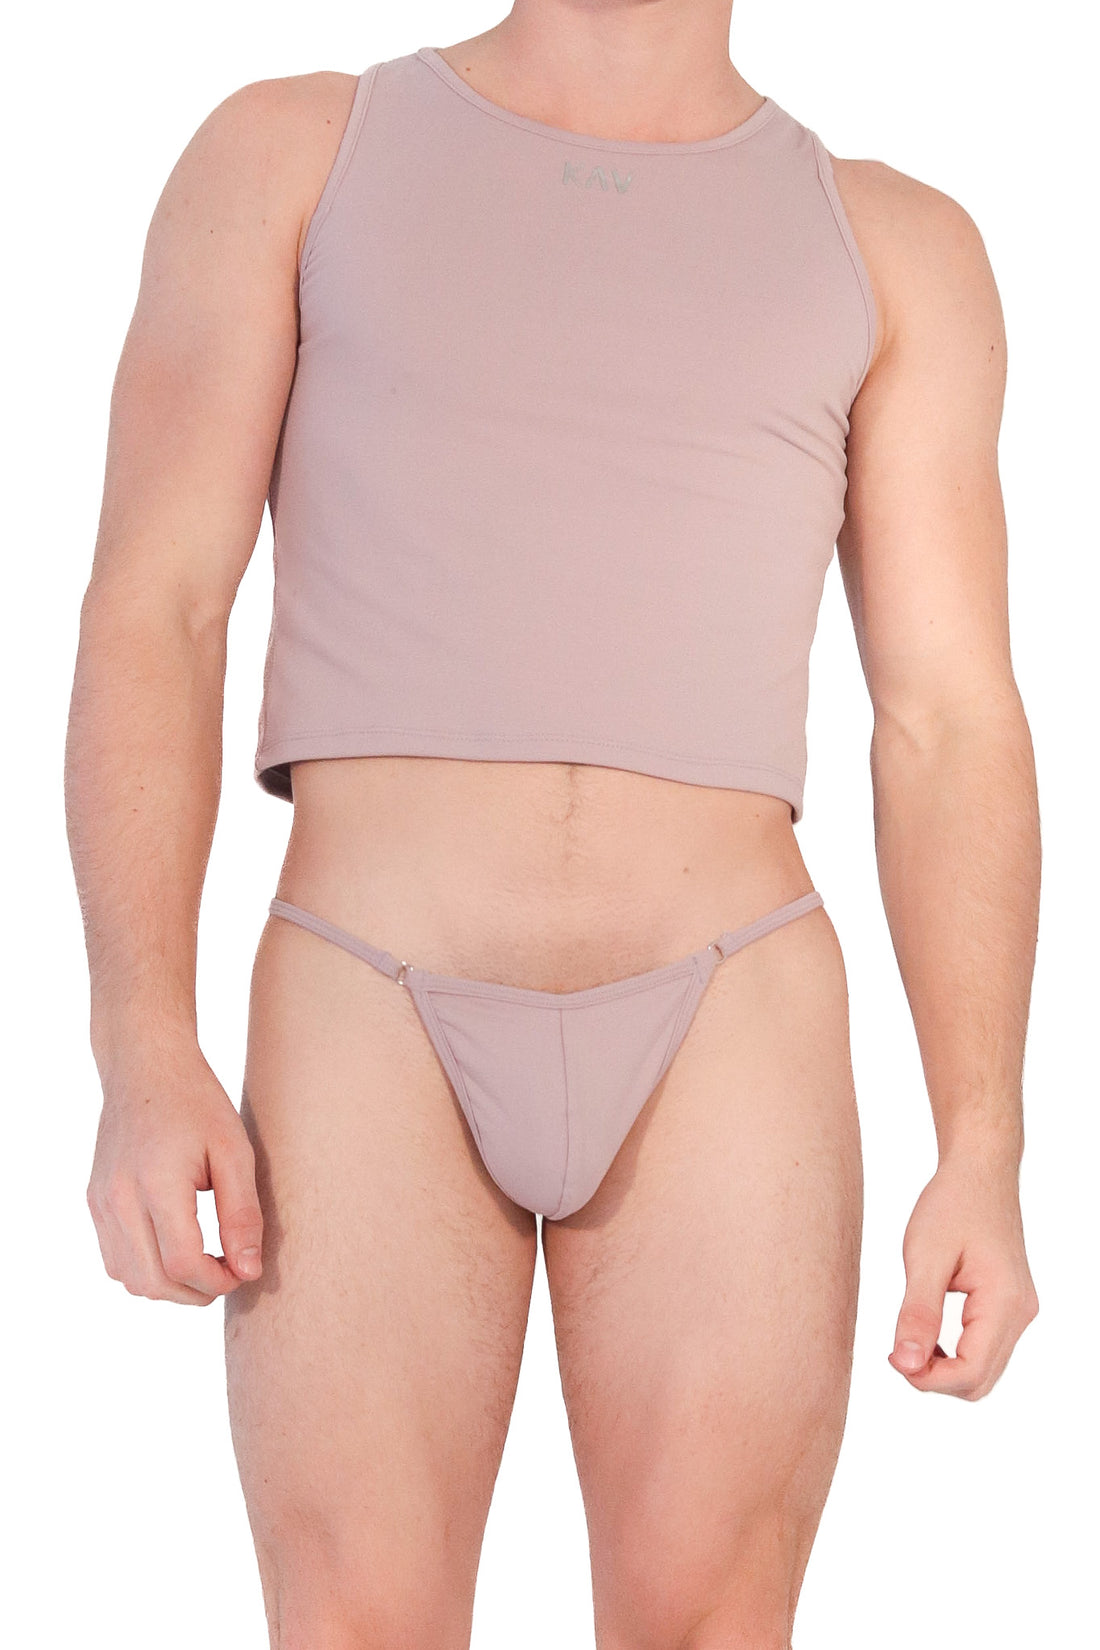 Underwear Men Wear – KAV Bottoms